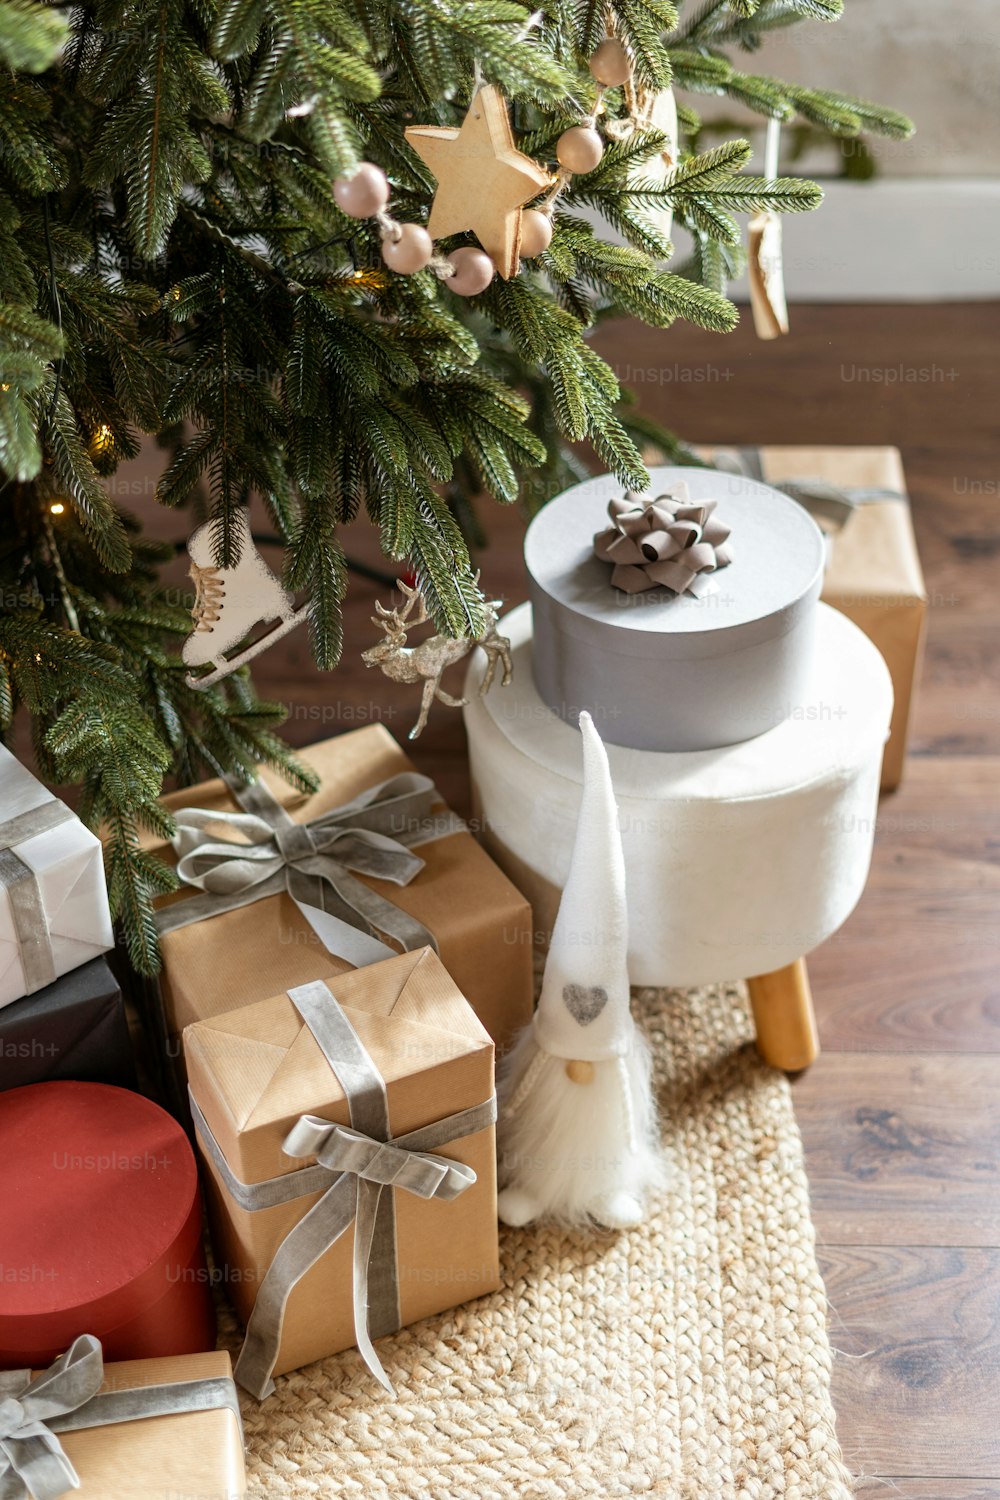 Vertikale Ansicht von Silvester-Geschenkboxen, Spielzeug und Geschenkpaketen unter dem geschmückten Weihnachtsbaum. Konzept der Winterfeste und desember Wohnkultur